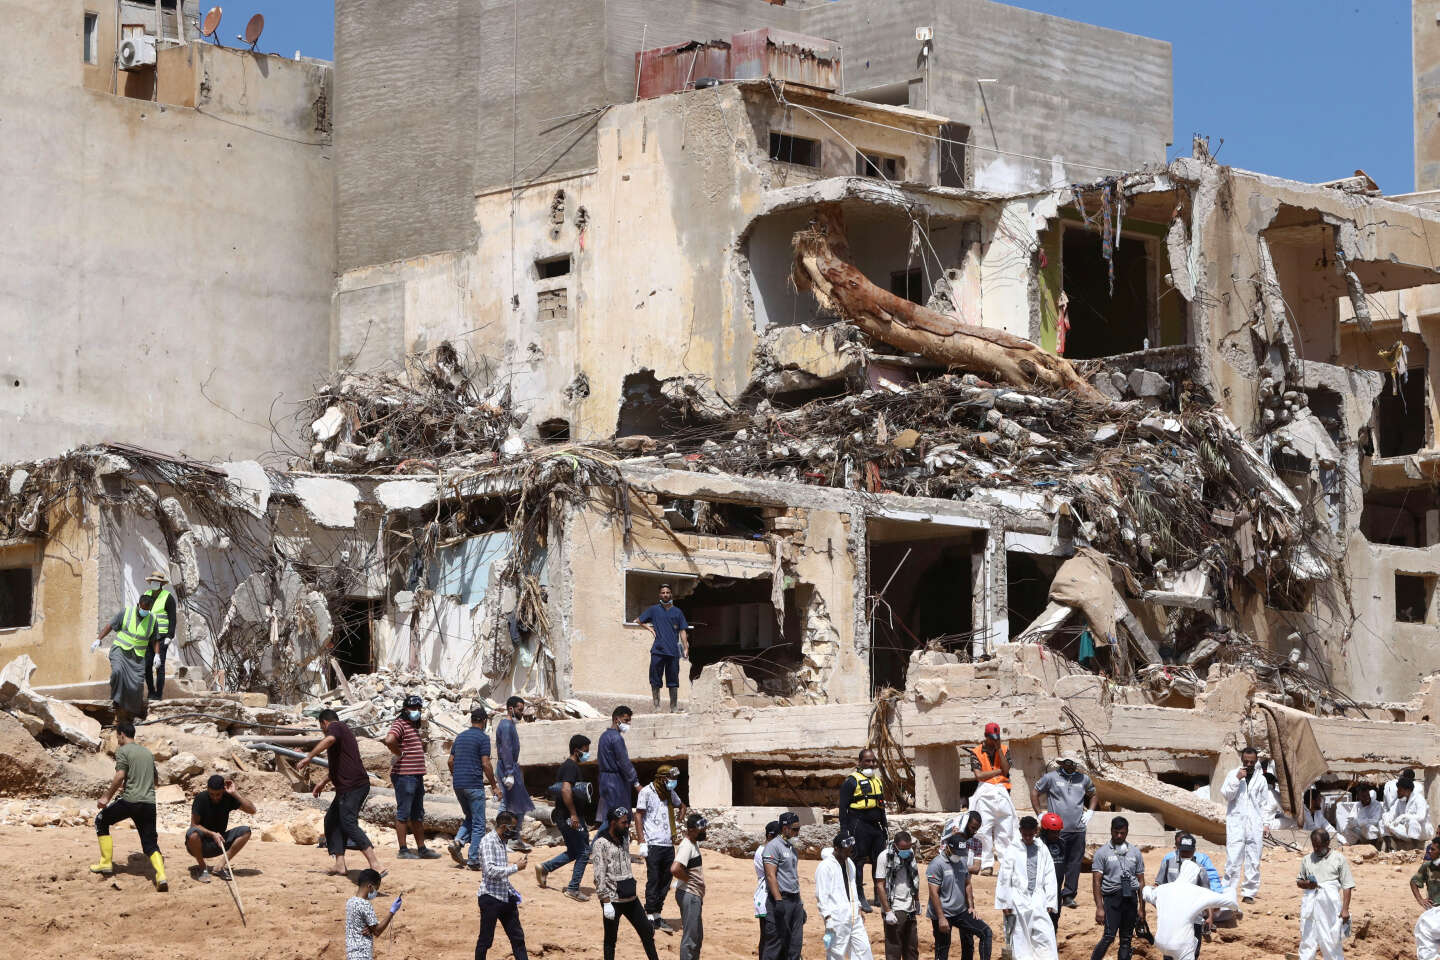 Libye : à Derna, au moins 11 300 personnes sont mortes dans les inondations, selon l’ONU